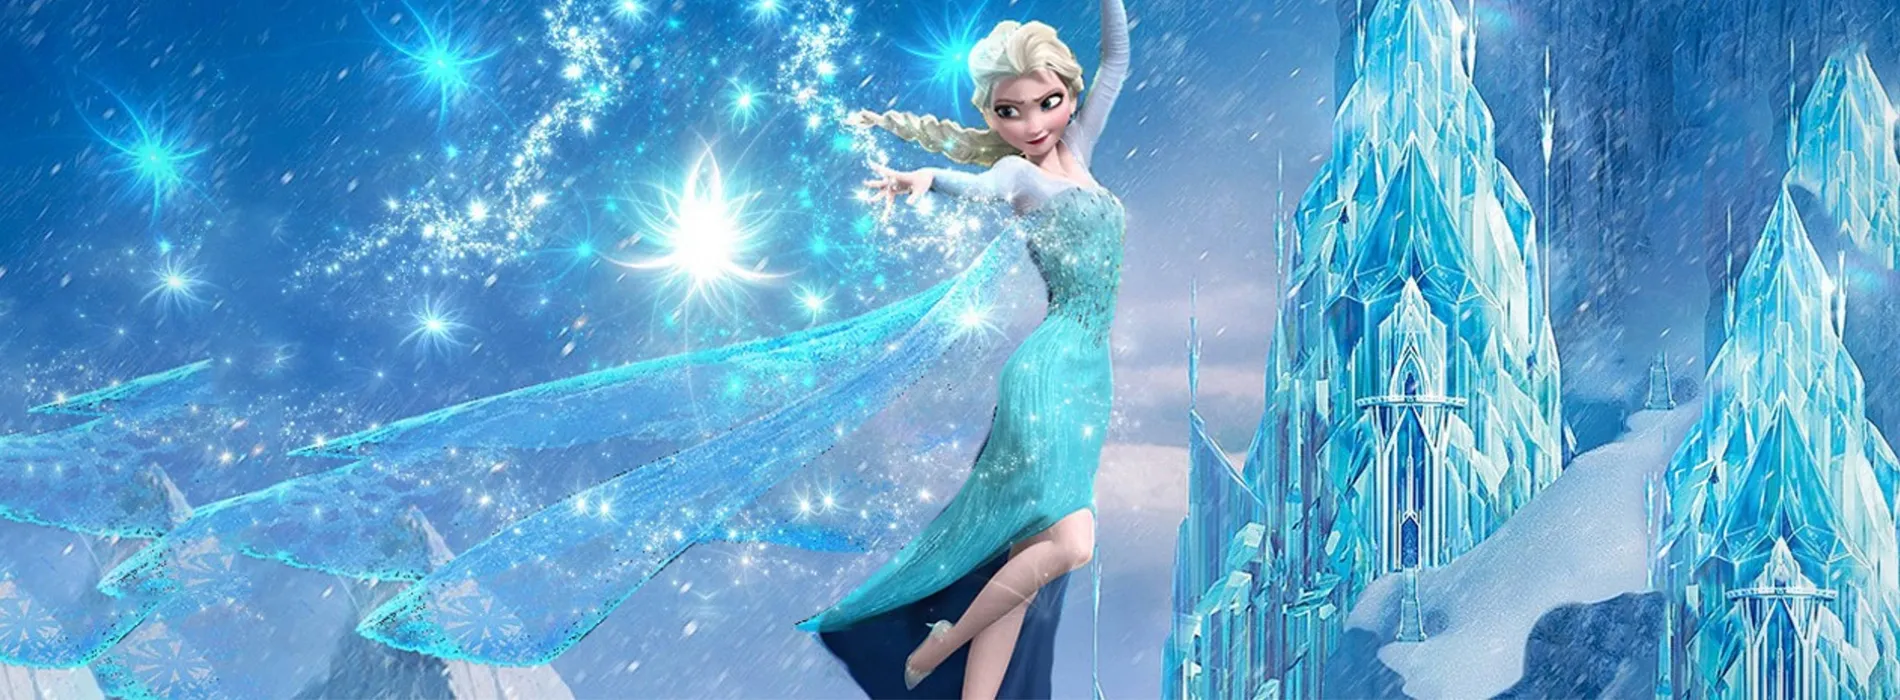 Bộ đồ chơi búp bê công chúa Elsa và trang phục Arendelle